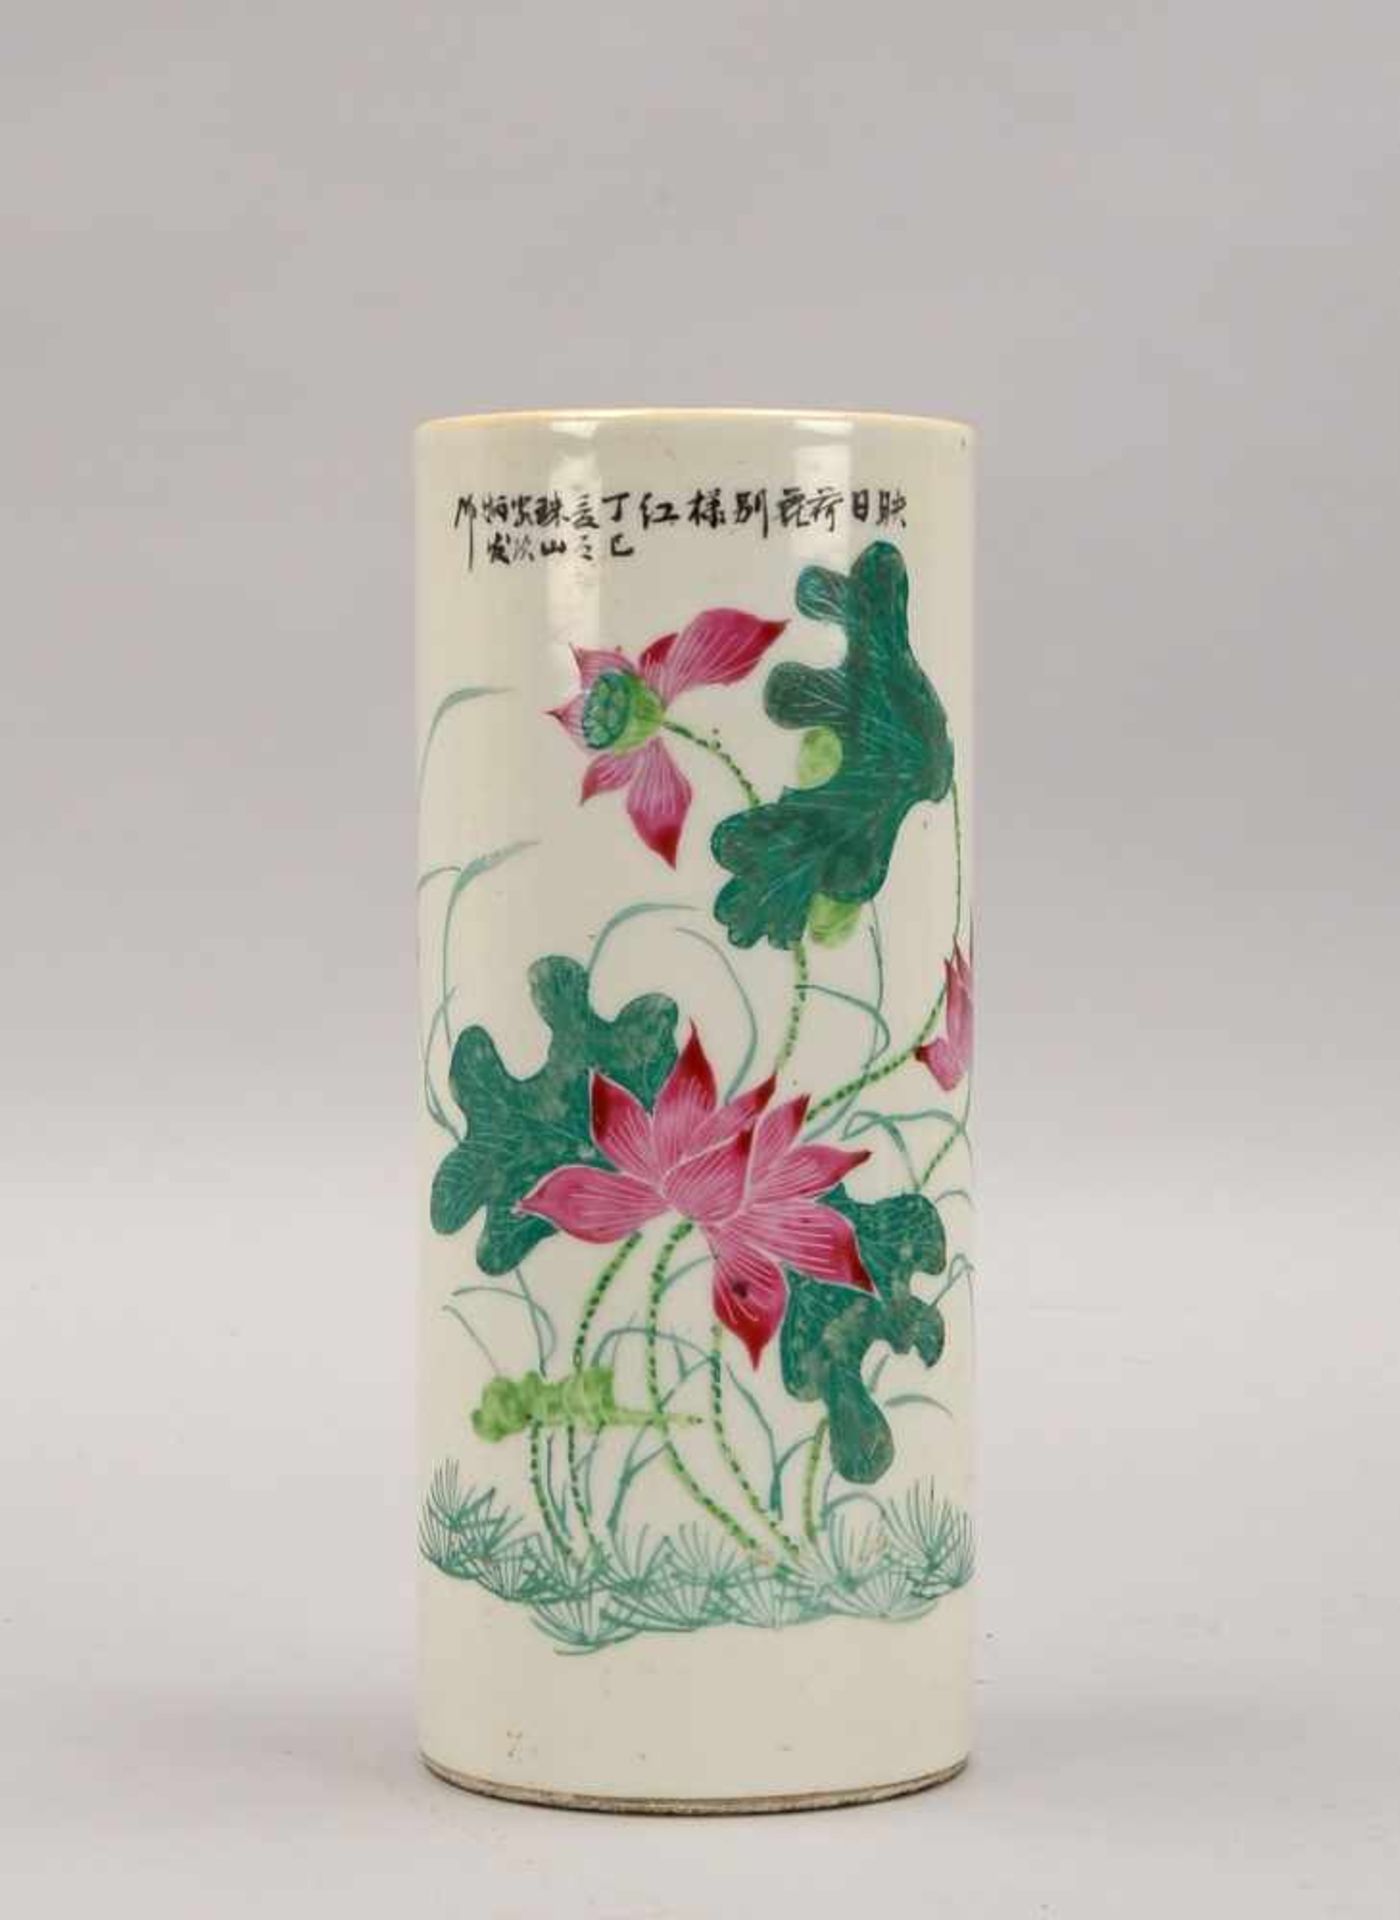 Porzellangefäß/Pinselbecher, China, um 1900, handbemalt, mit Lotusblüten-Motiven, im oberen Teil mit